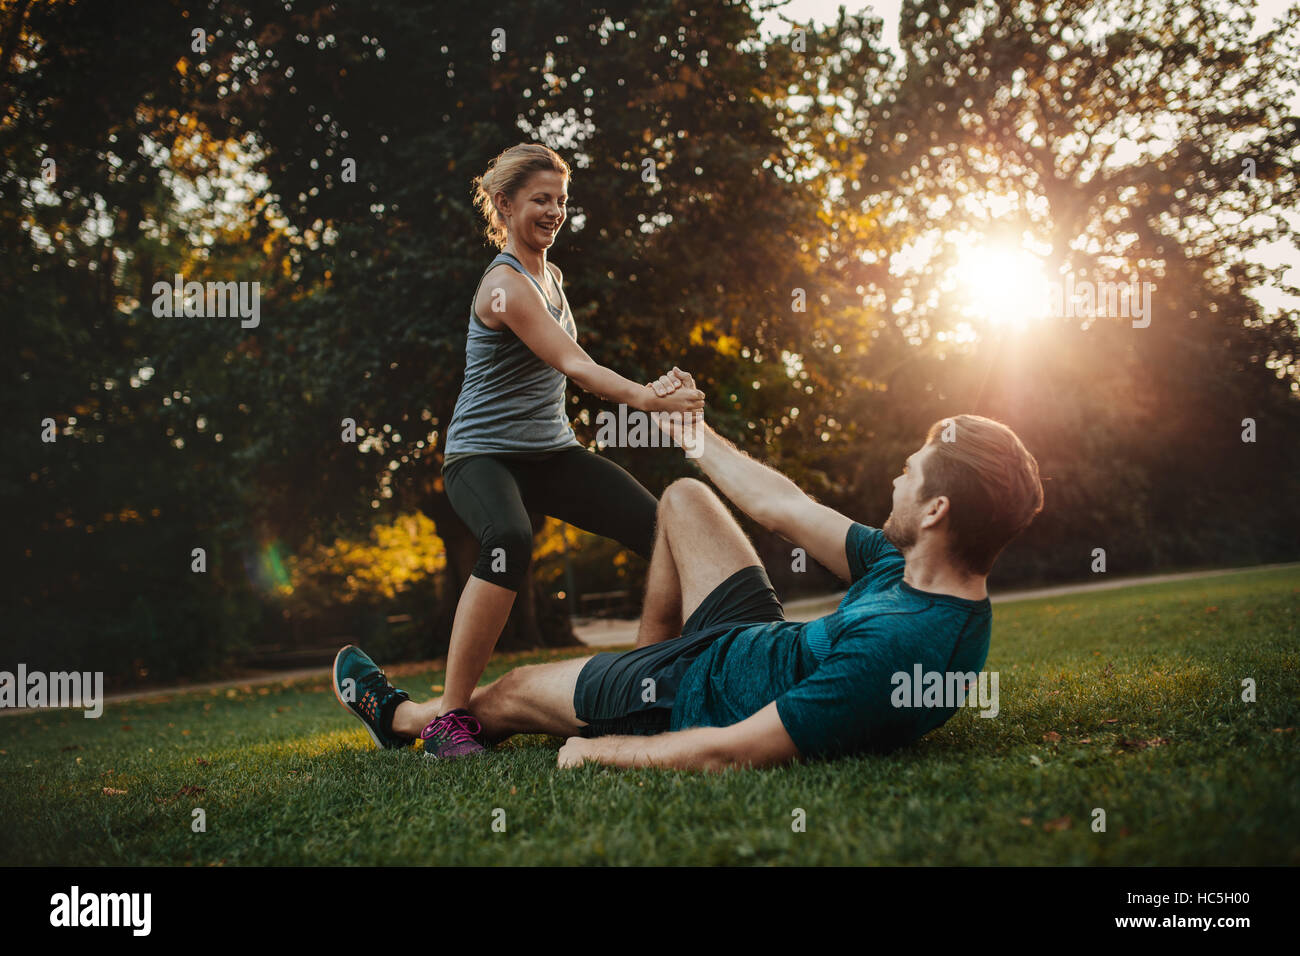 Aufnahme der jungen Frau, die Menschen vom Boden aufstehen helfen. Gesunde junge Paar im Park trainieren zusammen. Stockfoto